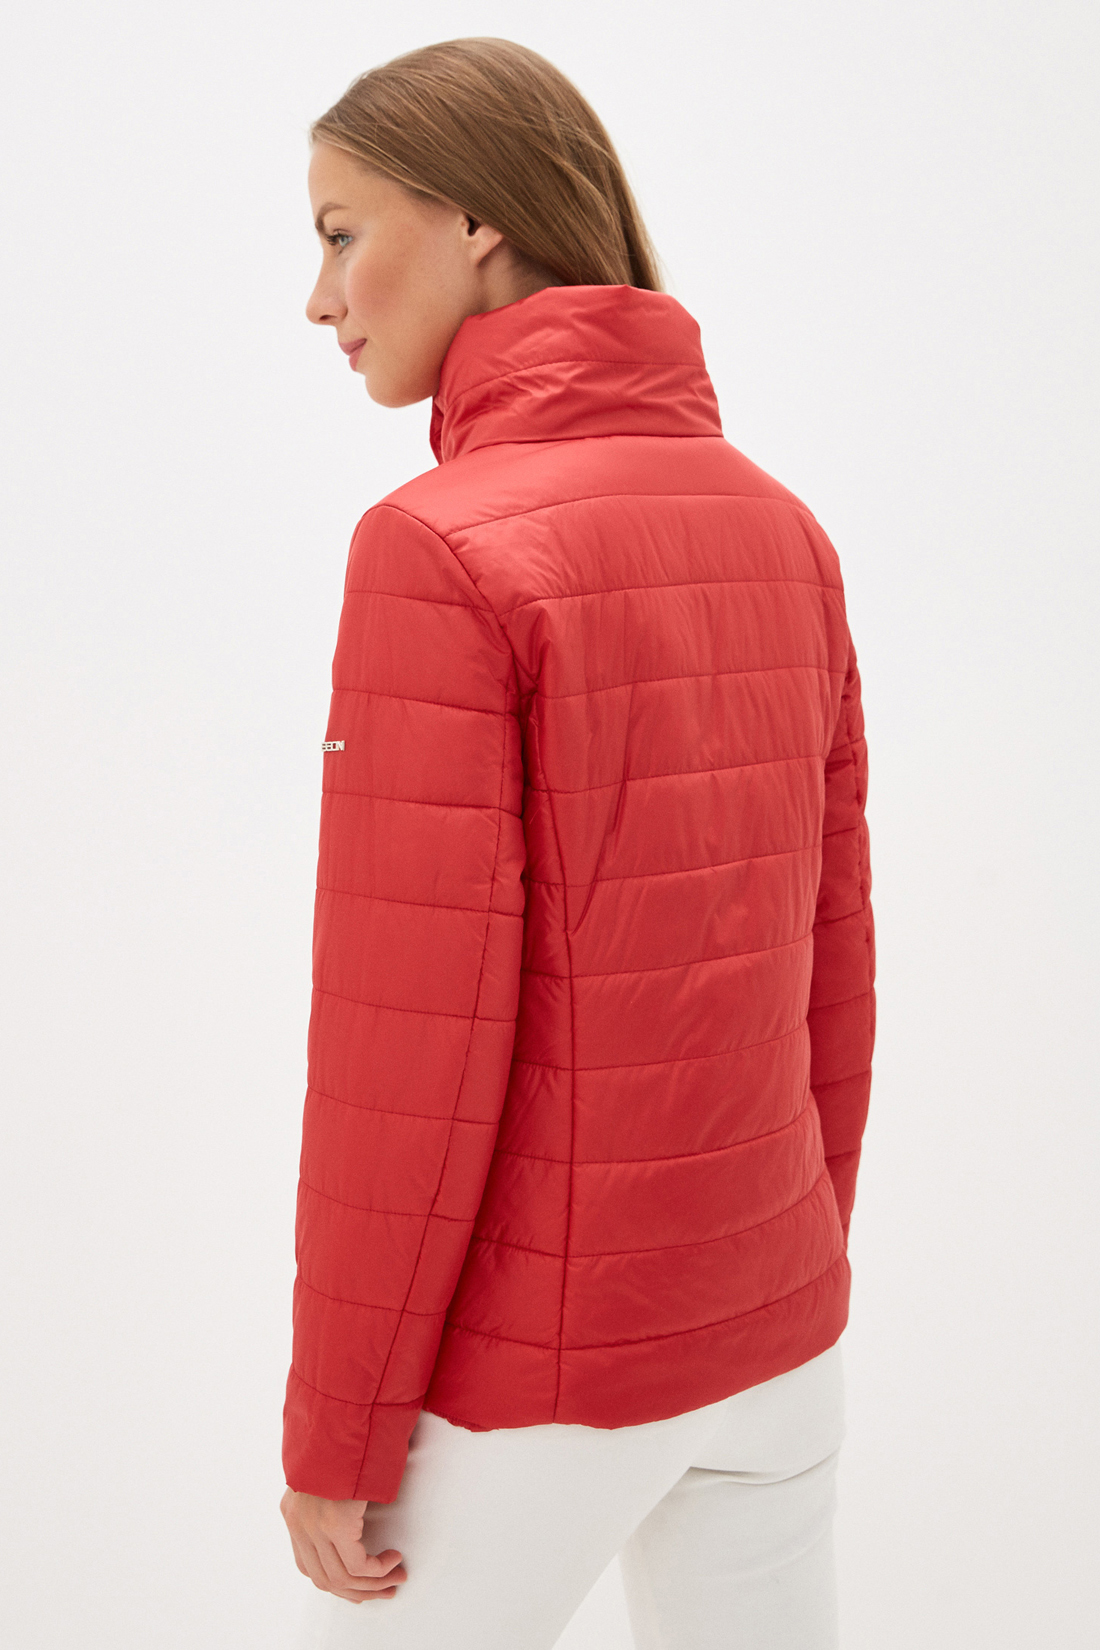 Куртка с воротником (арт. baon B030002), размер XXL, цвет красный Куртка с воротником (арт. baon B030002) - фото 2